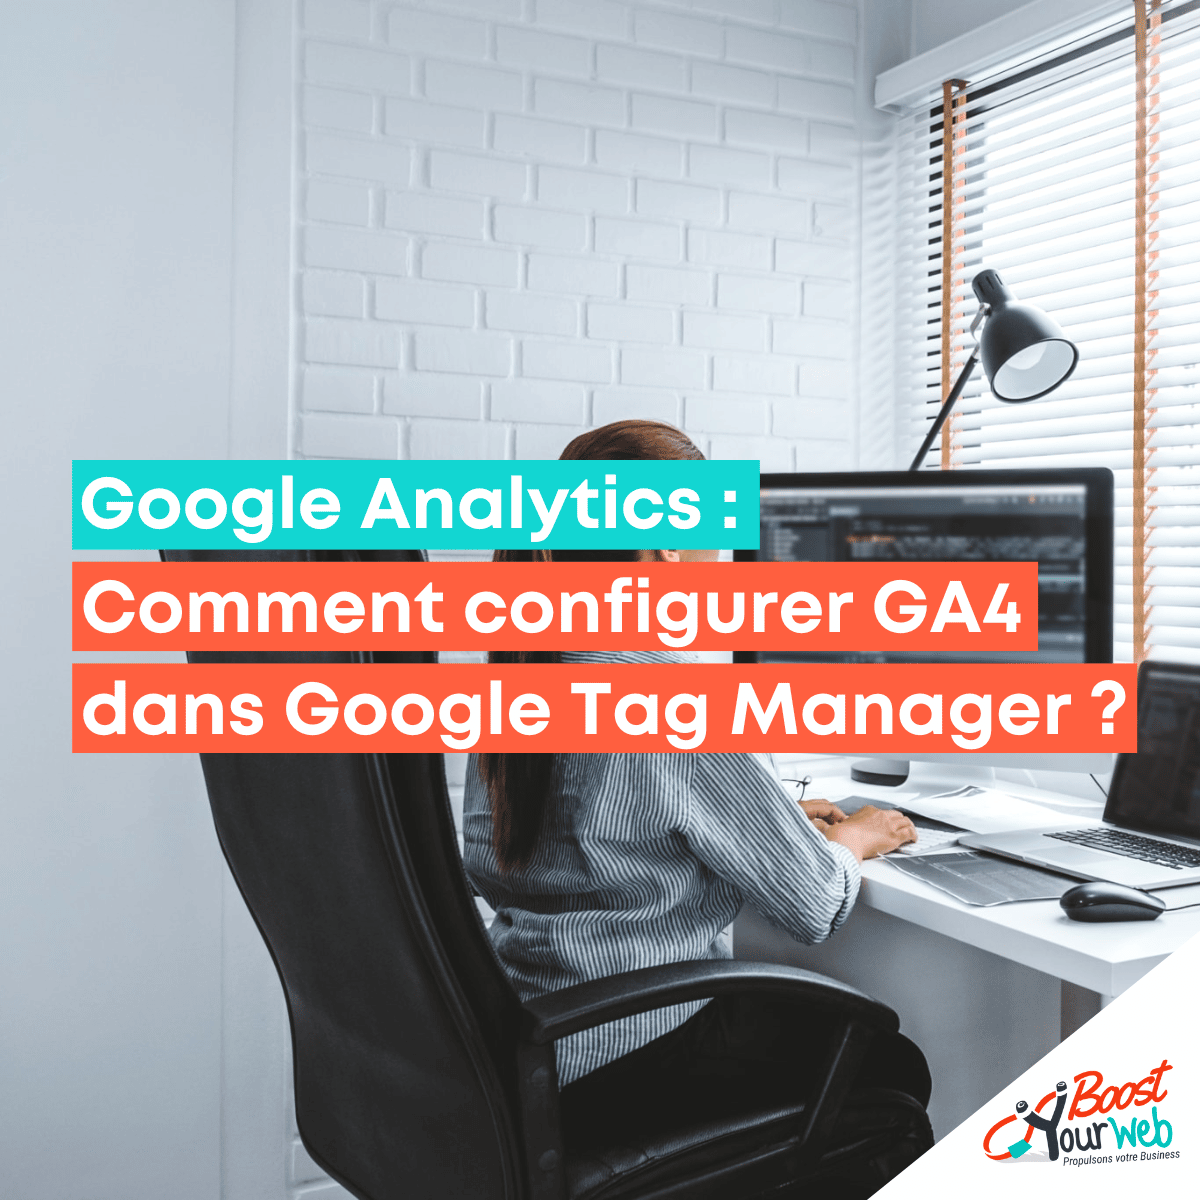 Comment configurer GA4 dans Google Tag Manager